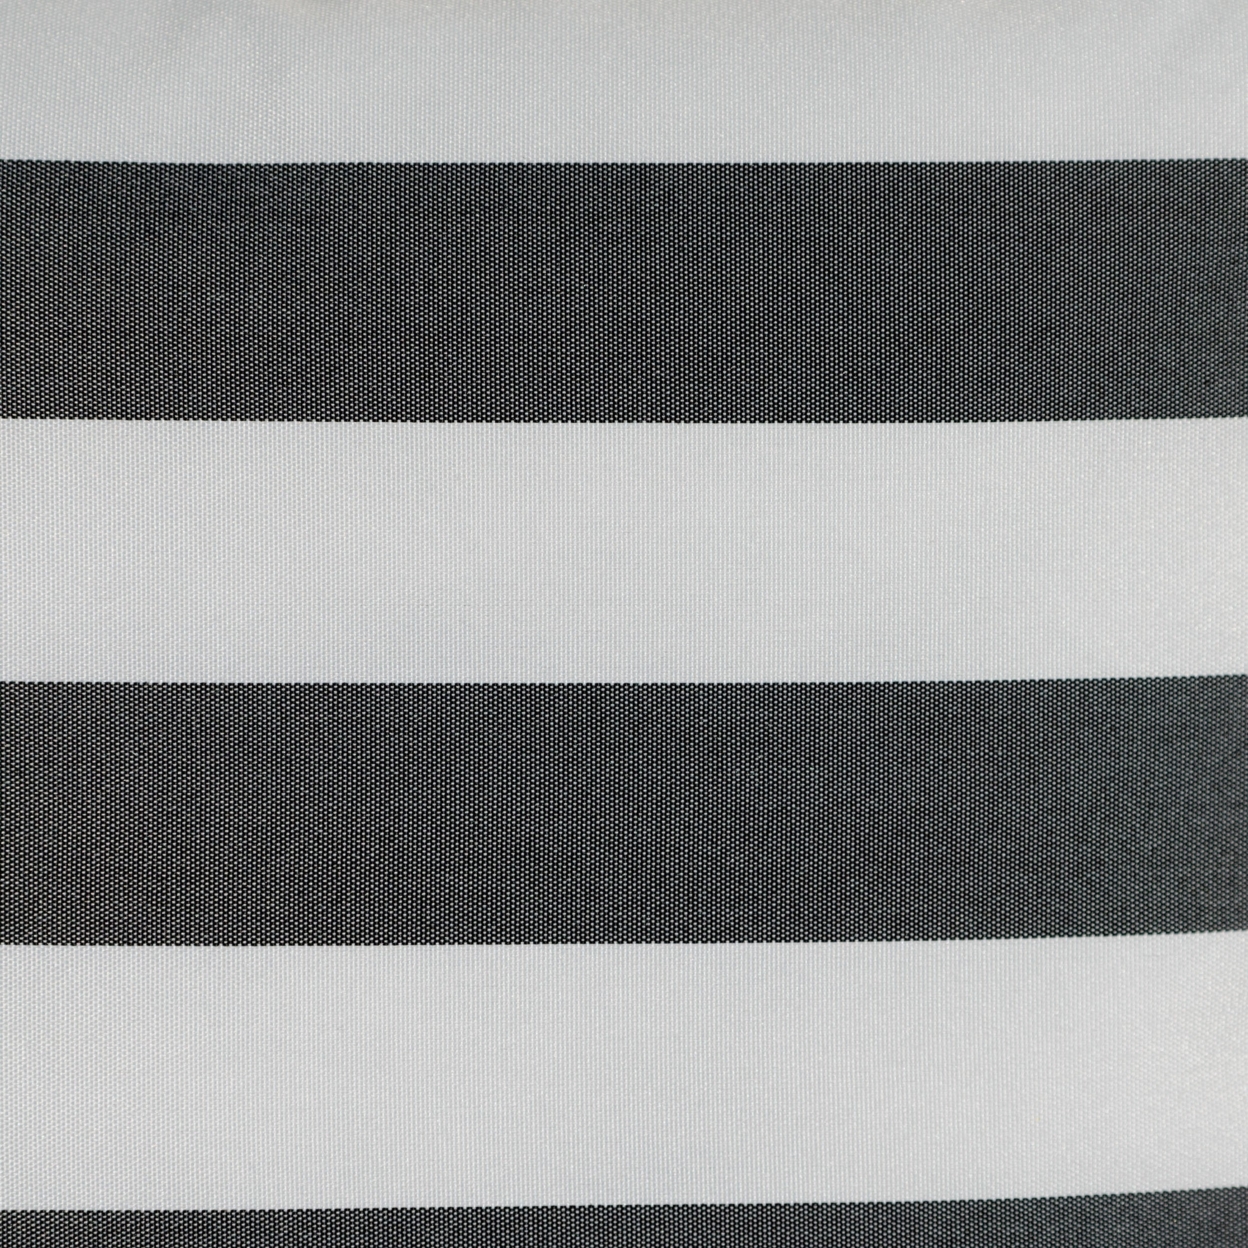 Coronado Outdoor Stripe Water Resistant Square Throw Pillow - Black/white, Single